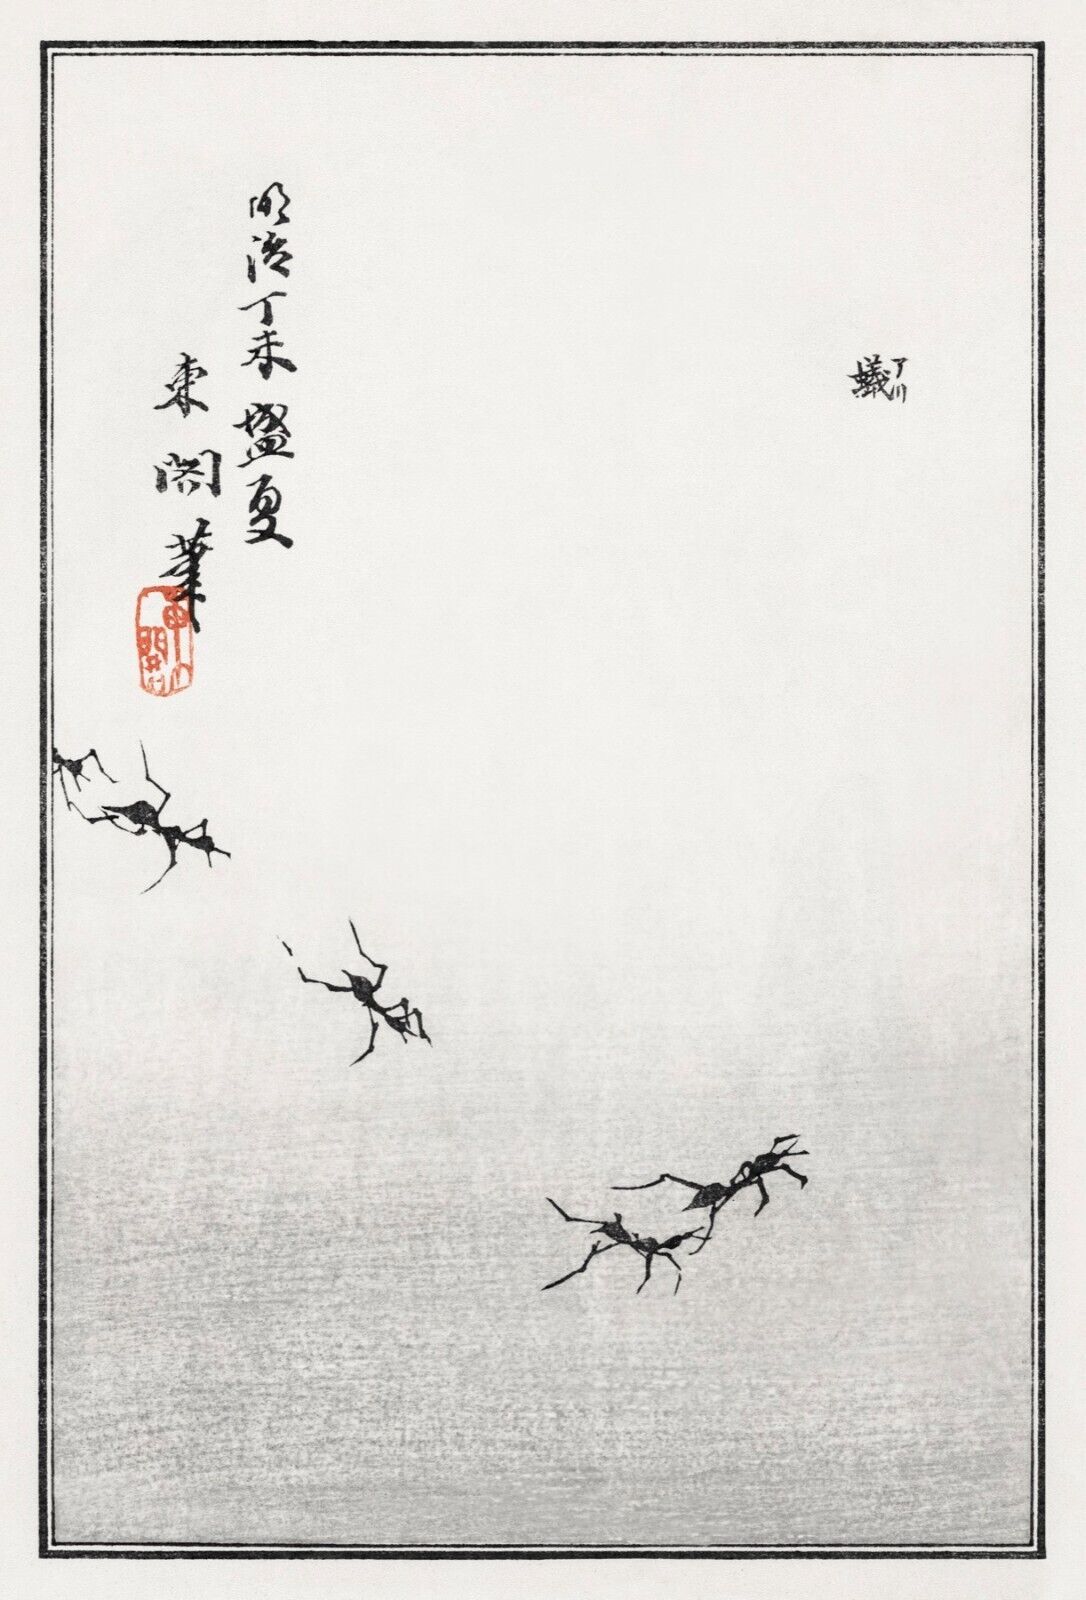 10066.Decor Poster.Room home wall.1910 Japan print.Morimoto Toko art.Ants